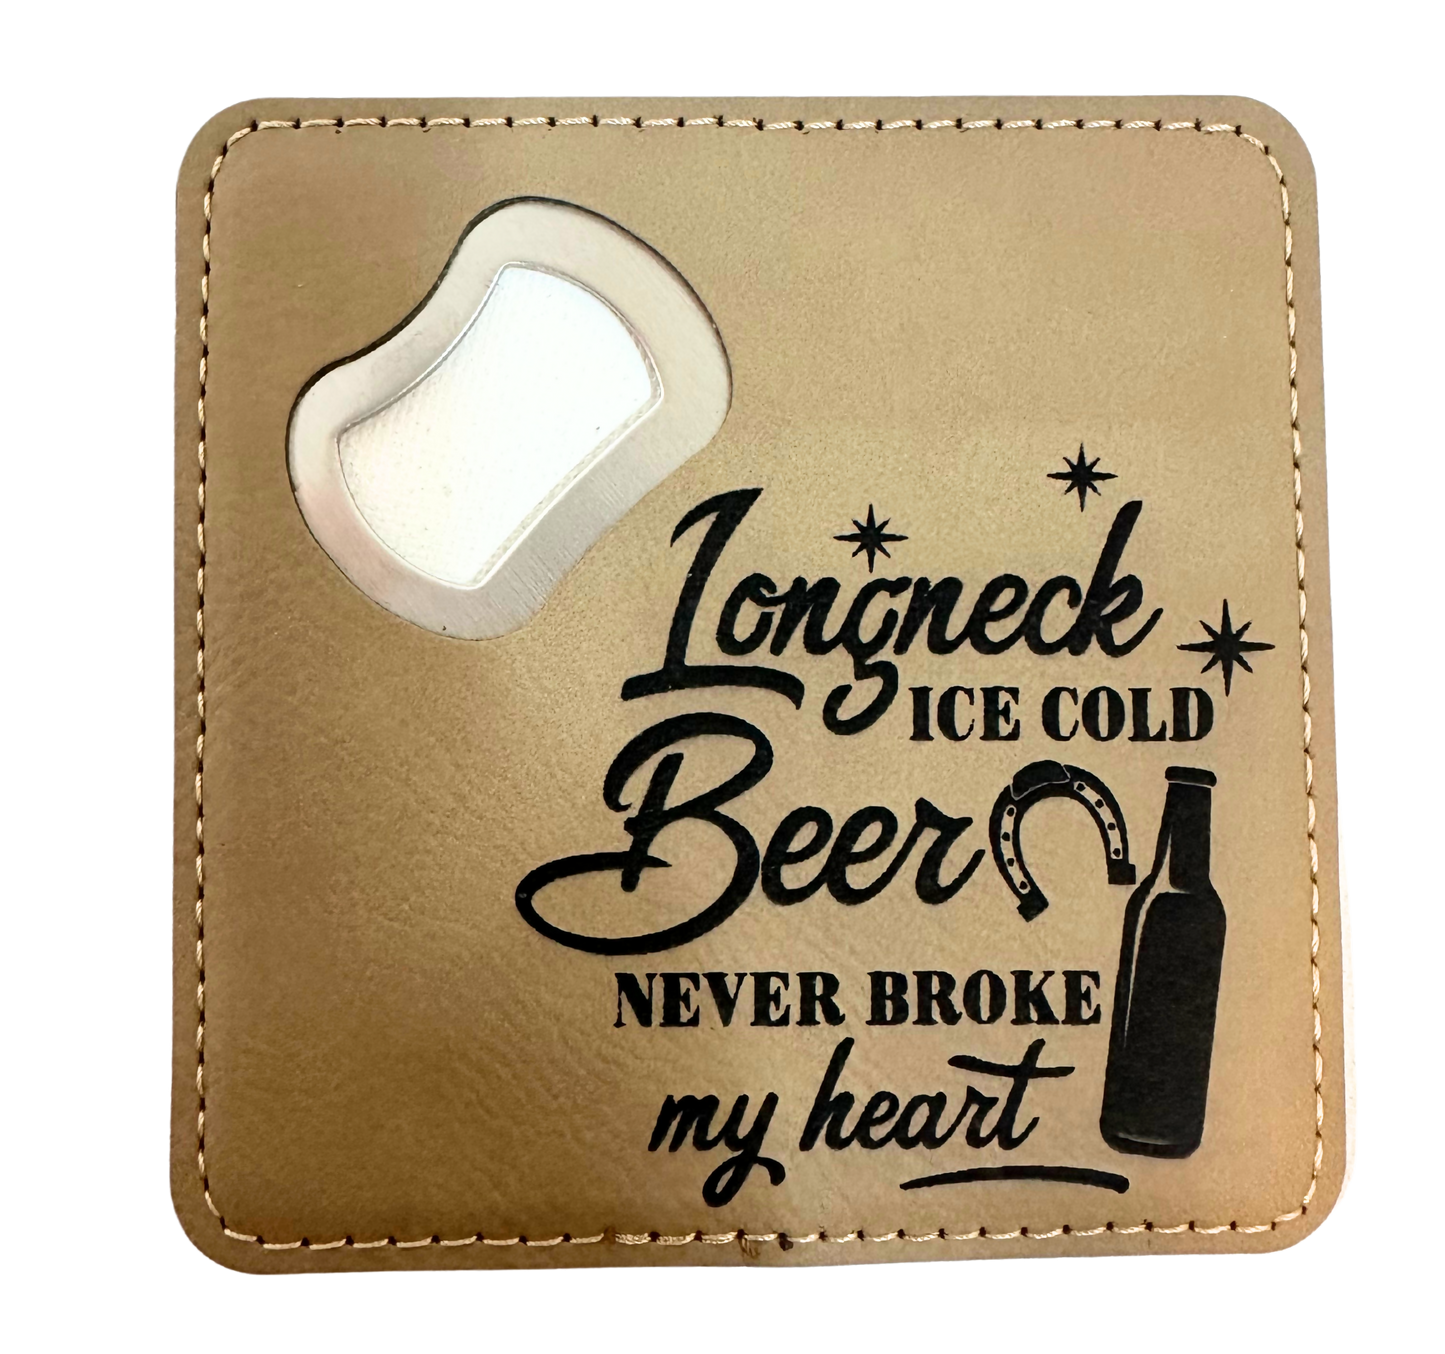 Beer never broke my heart coaster